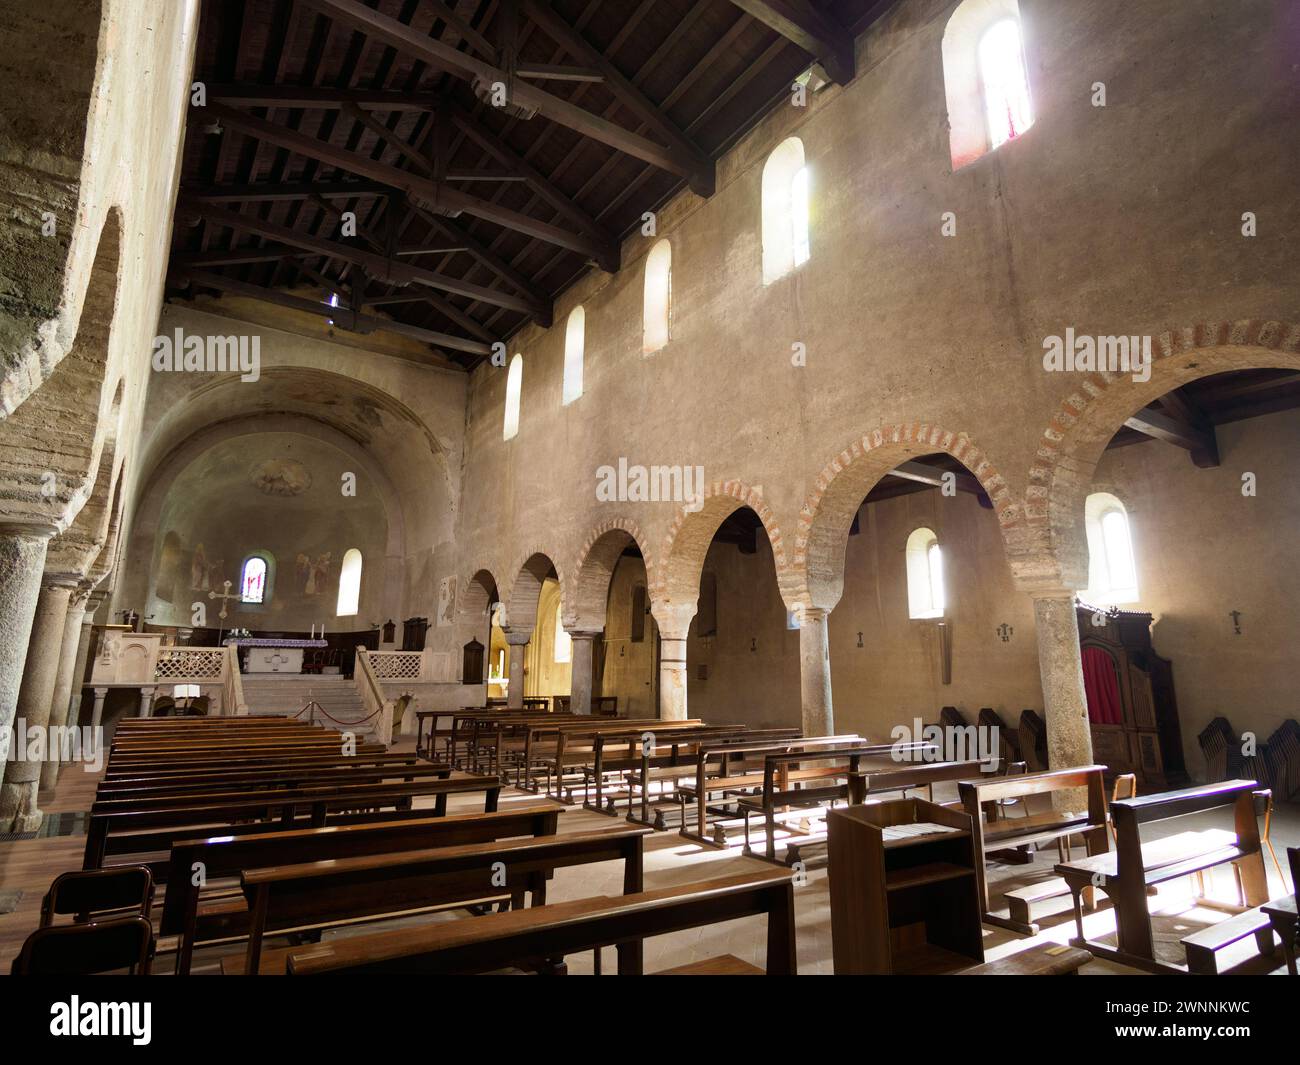 Église médiévale de SS. Pietro e Paolo à Agliate, province de Monza Brianza, Lombardie, Italie. Intérieur Banque D'Images